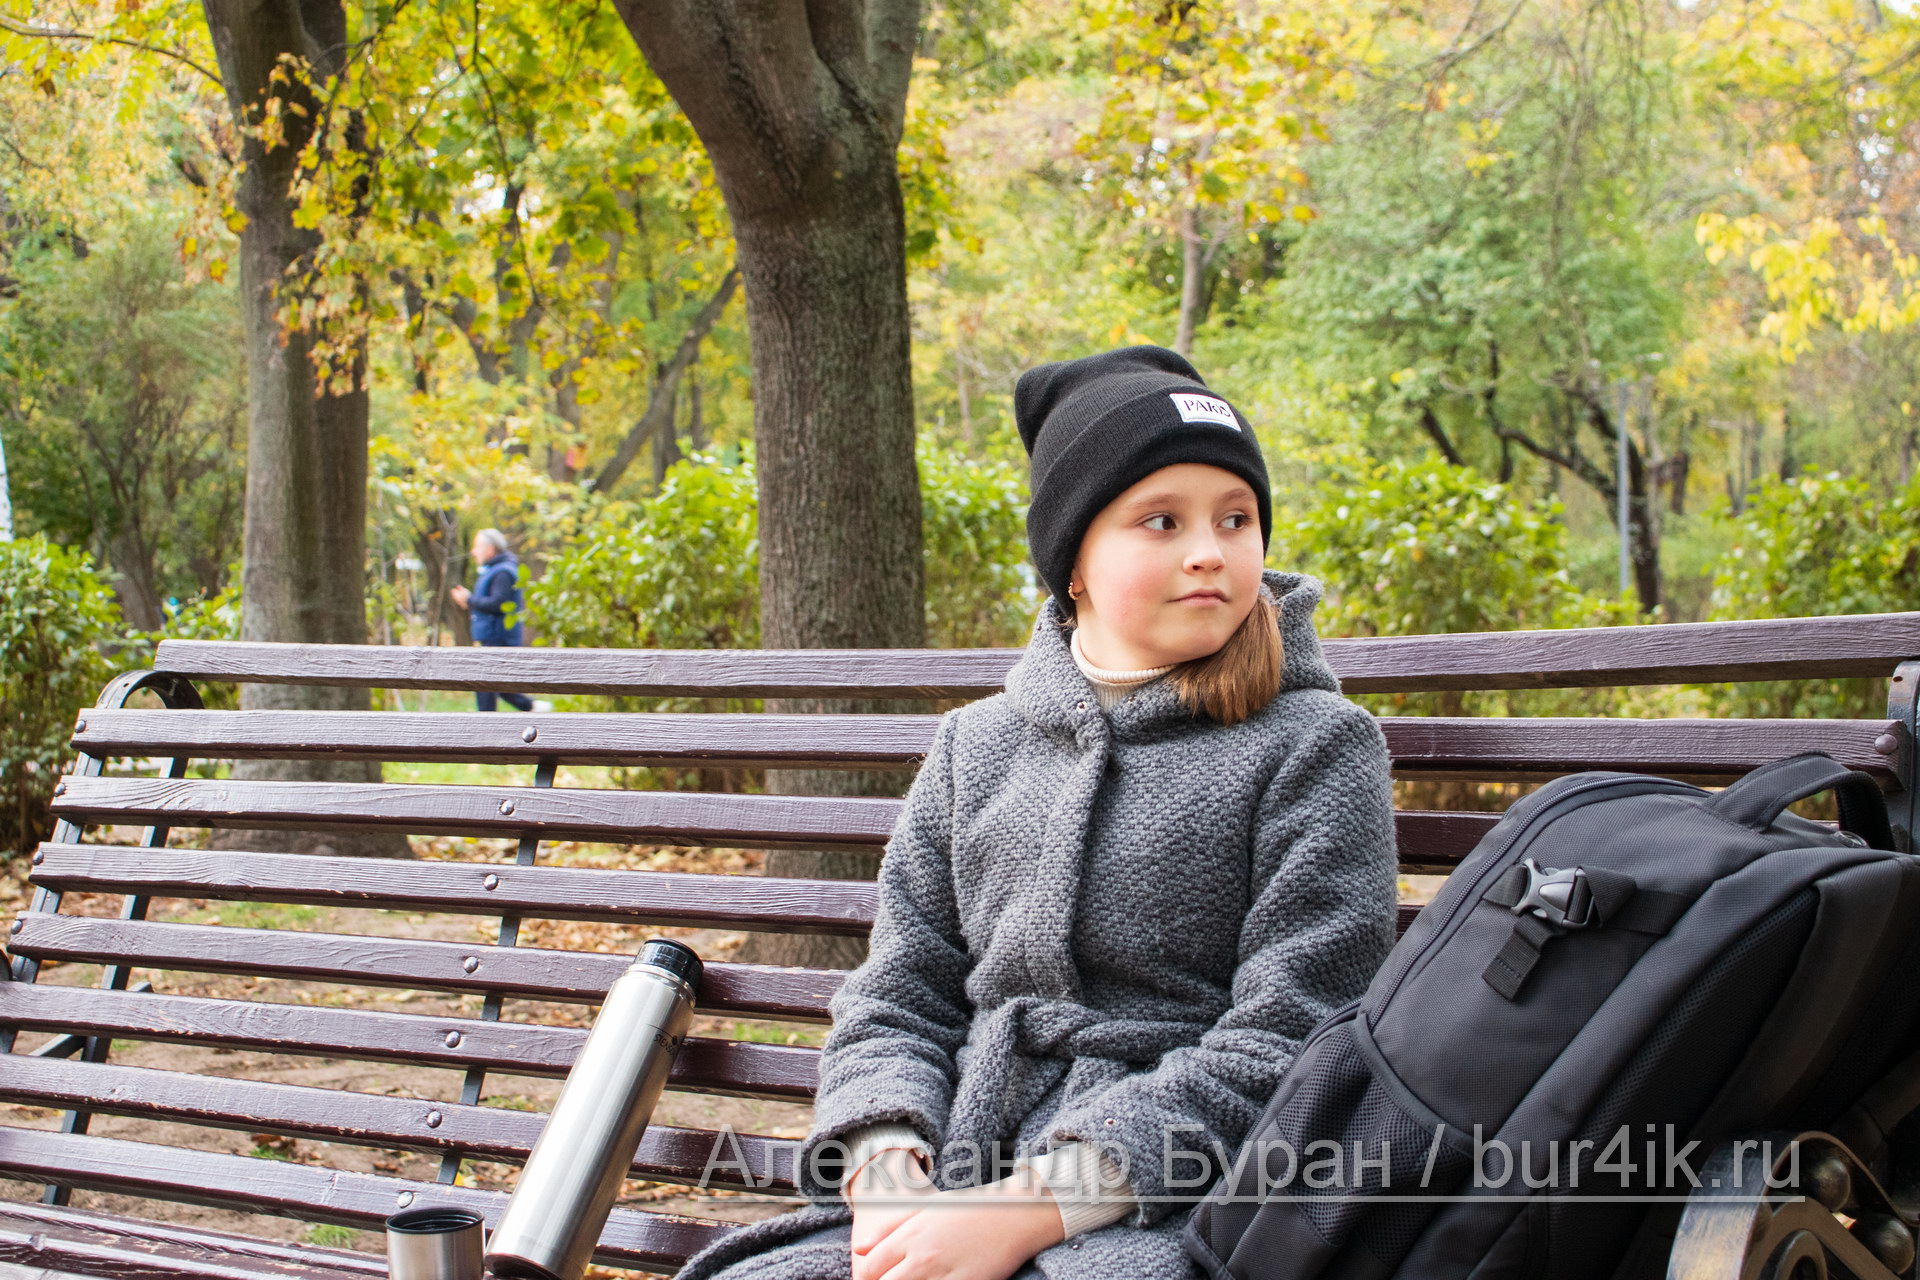 Девушка отдыхает на скамейке в осеннем парке - Украина, Одесса, 17,10,2019